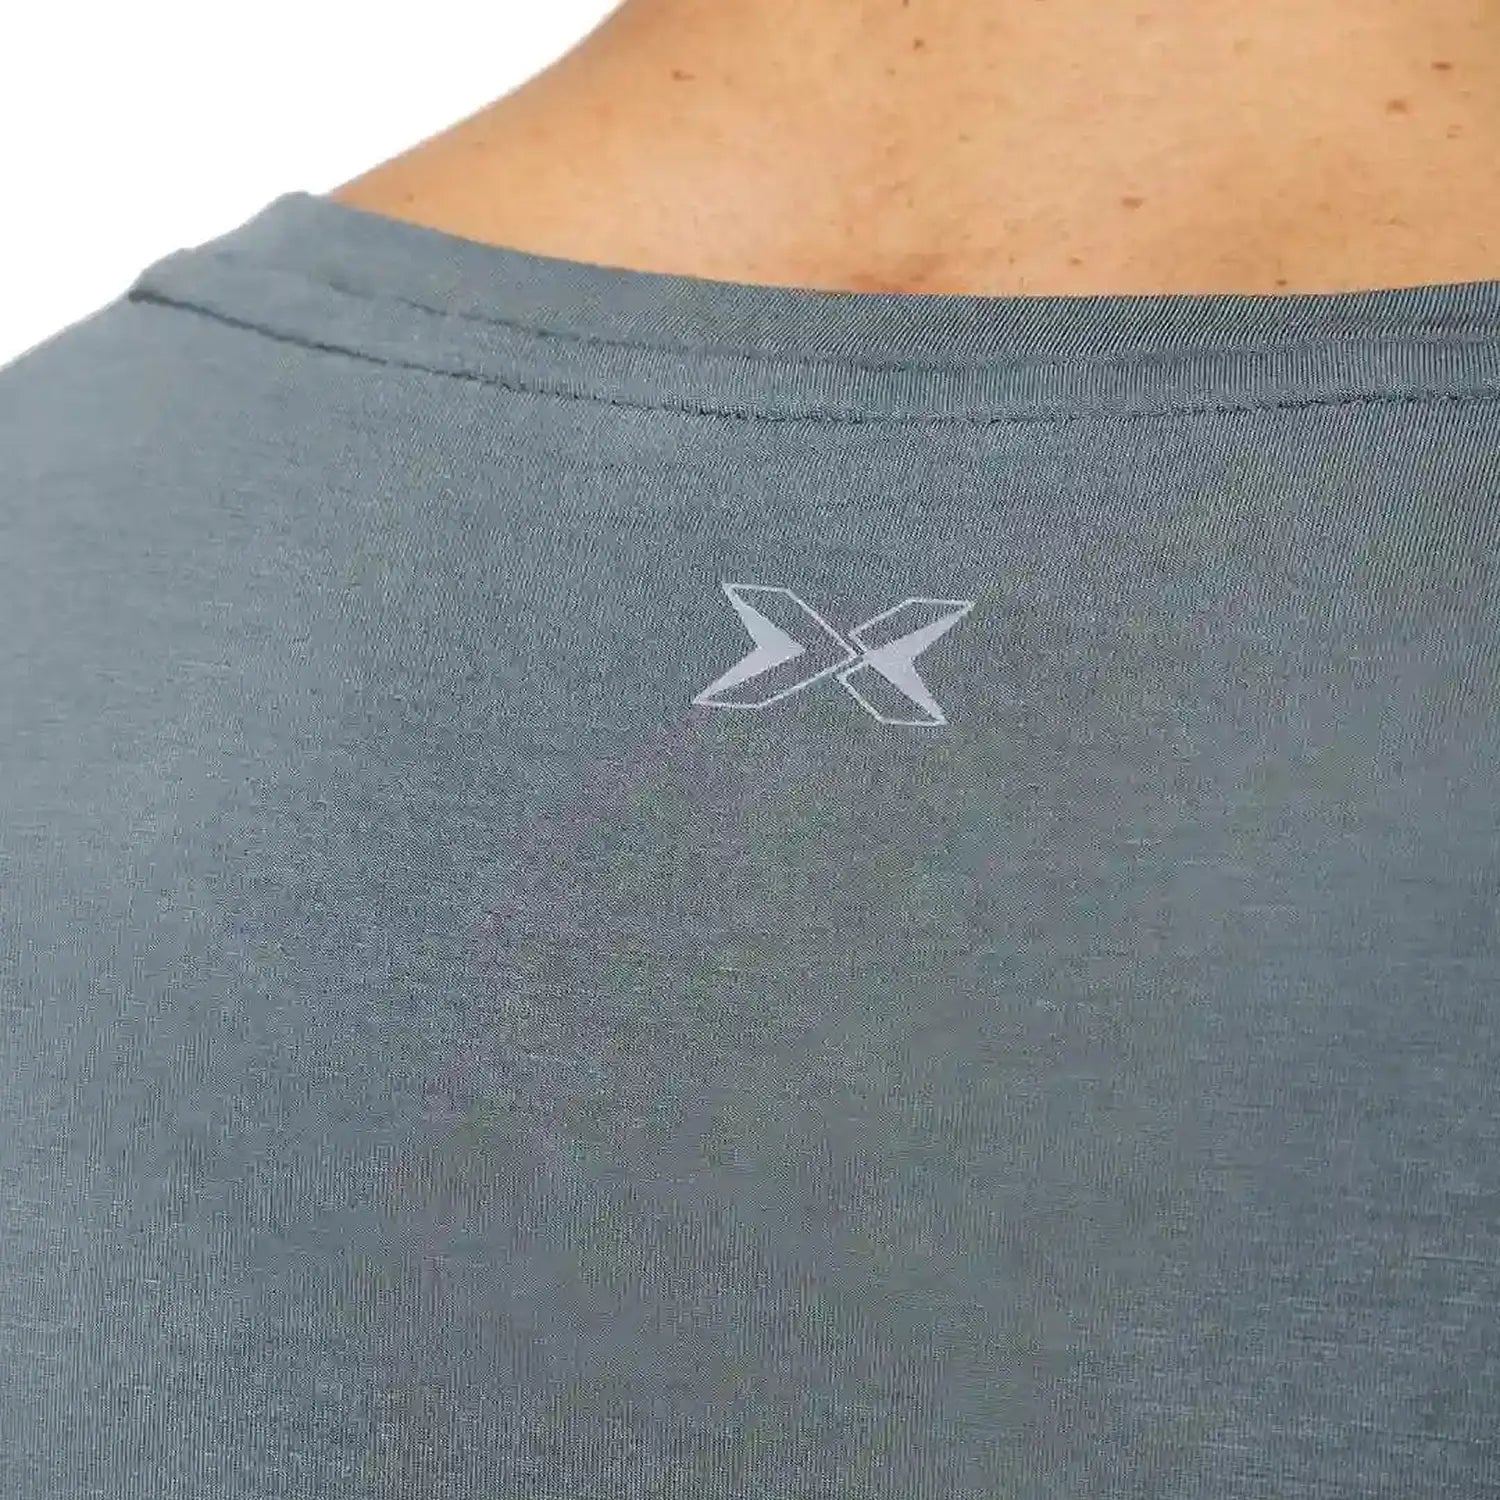 PicSil Herren Sport T-Shirt Kurzarm (Core) Grün kaufen bei HighPowered.ch